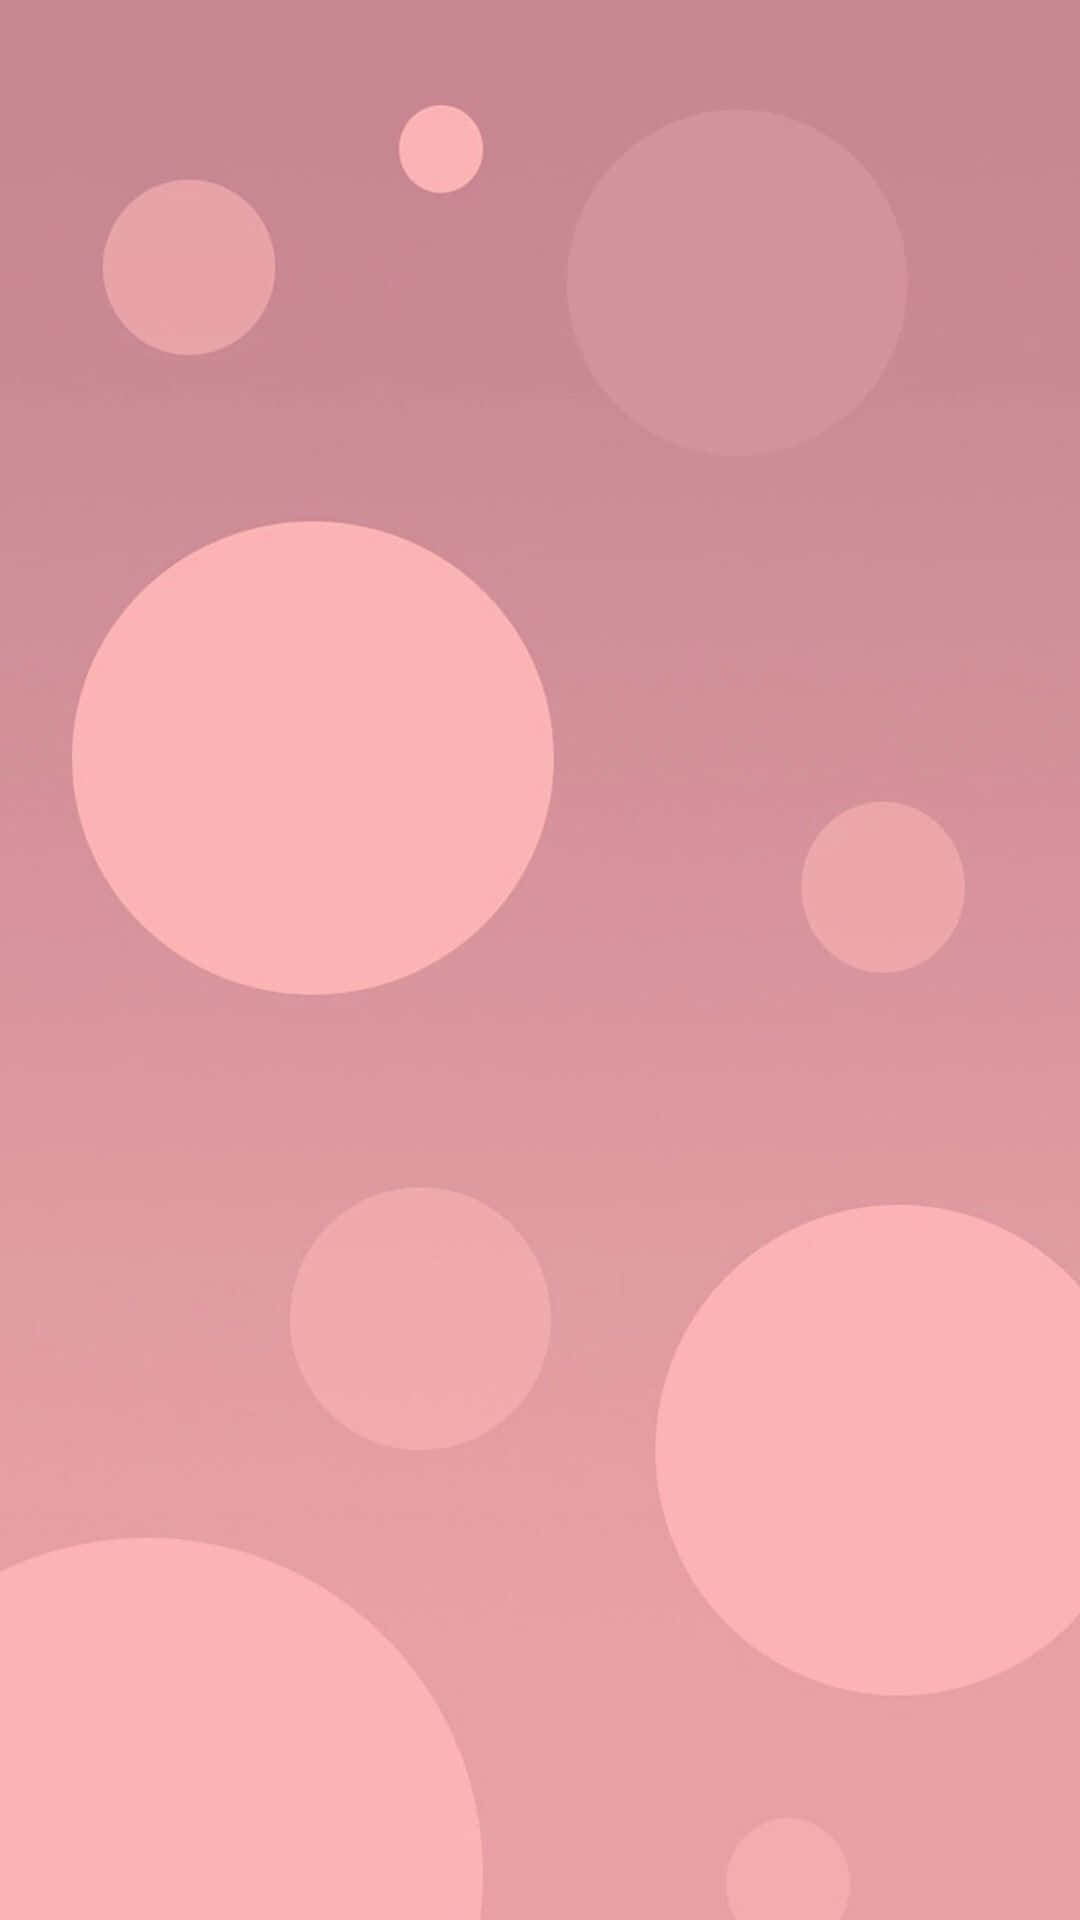 Lacombinazione Perfetta Di Design E Stile Con L'iphone 5 Color Oro Rosa. Sfondo